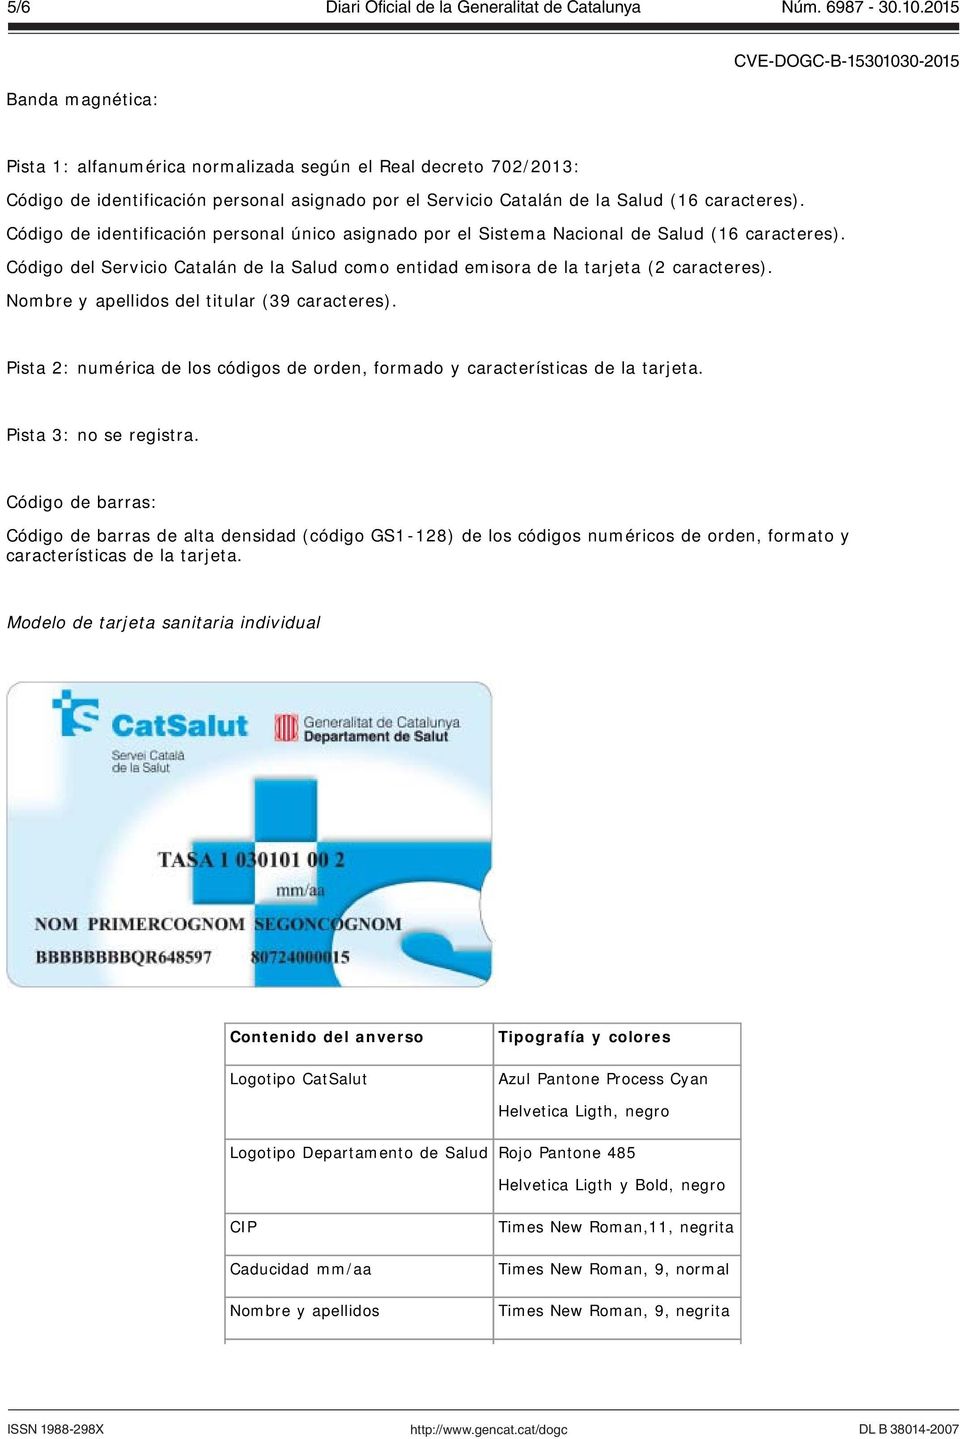 Código del Servicio Catalán de la Salud como entidad emisora de la tarjeta (2 caracteres). Nombre y apellidos del titular (39 caracteres).